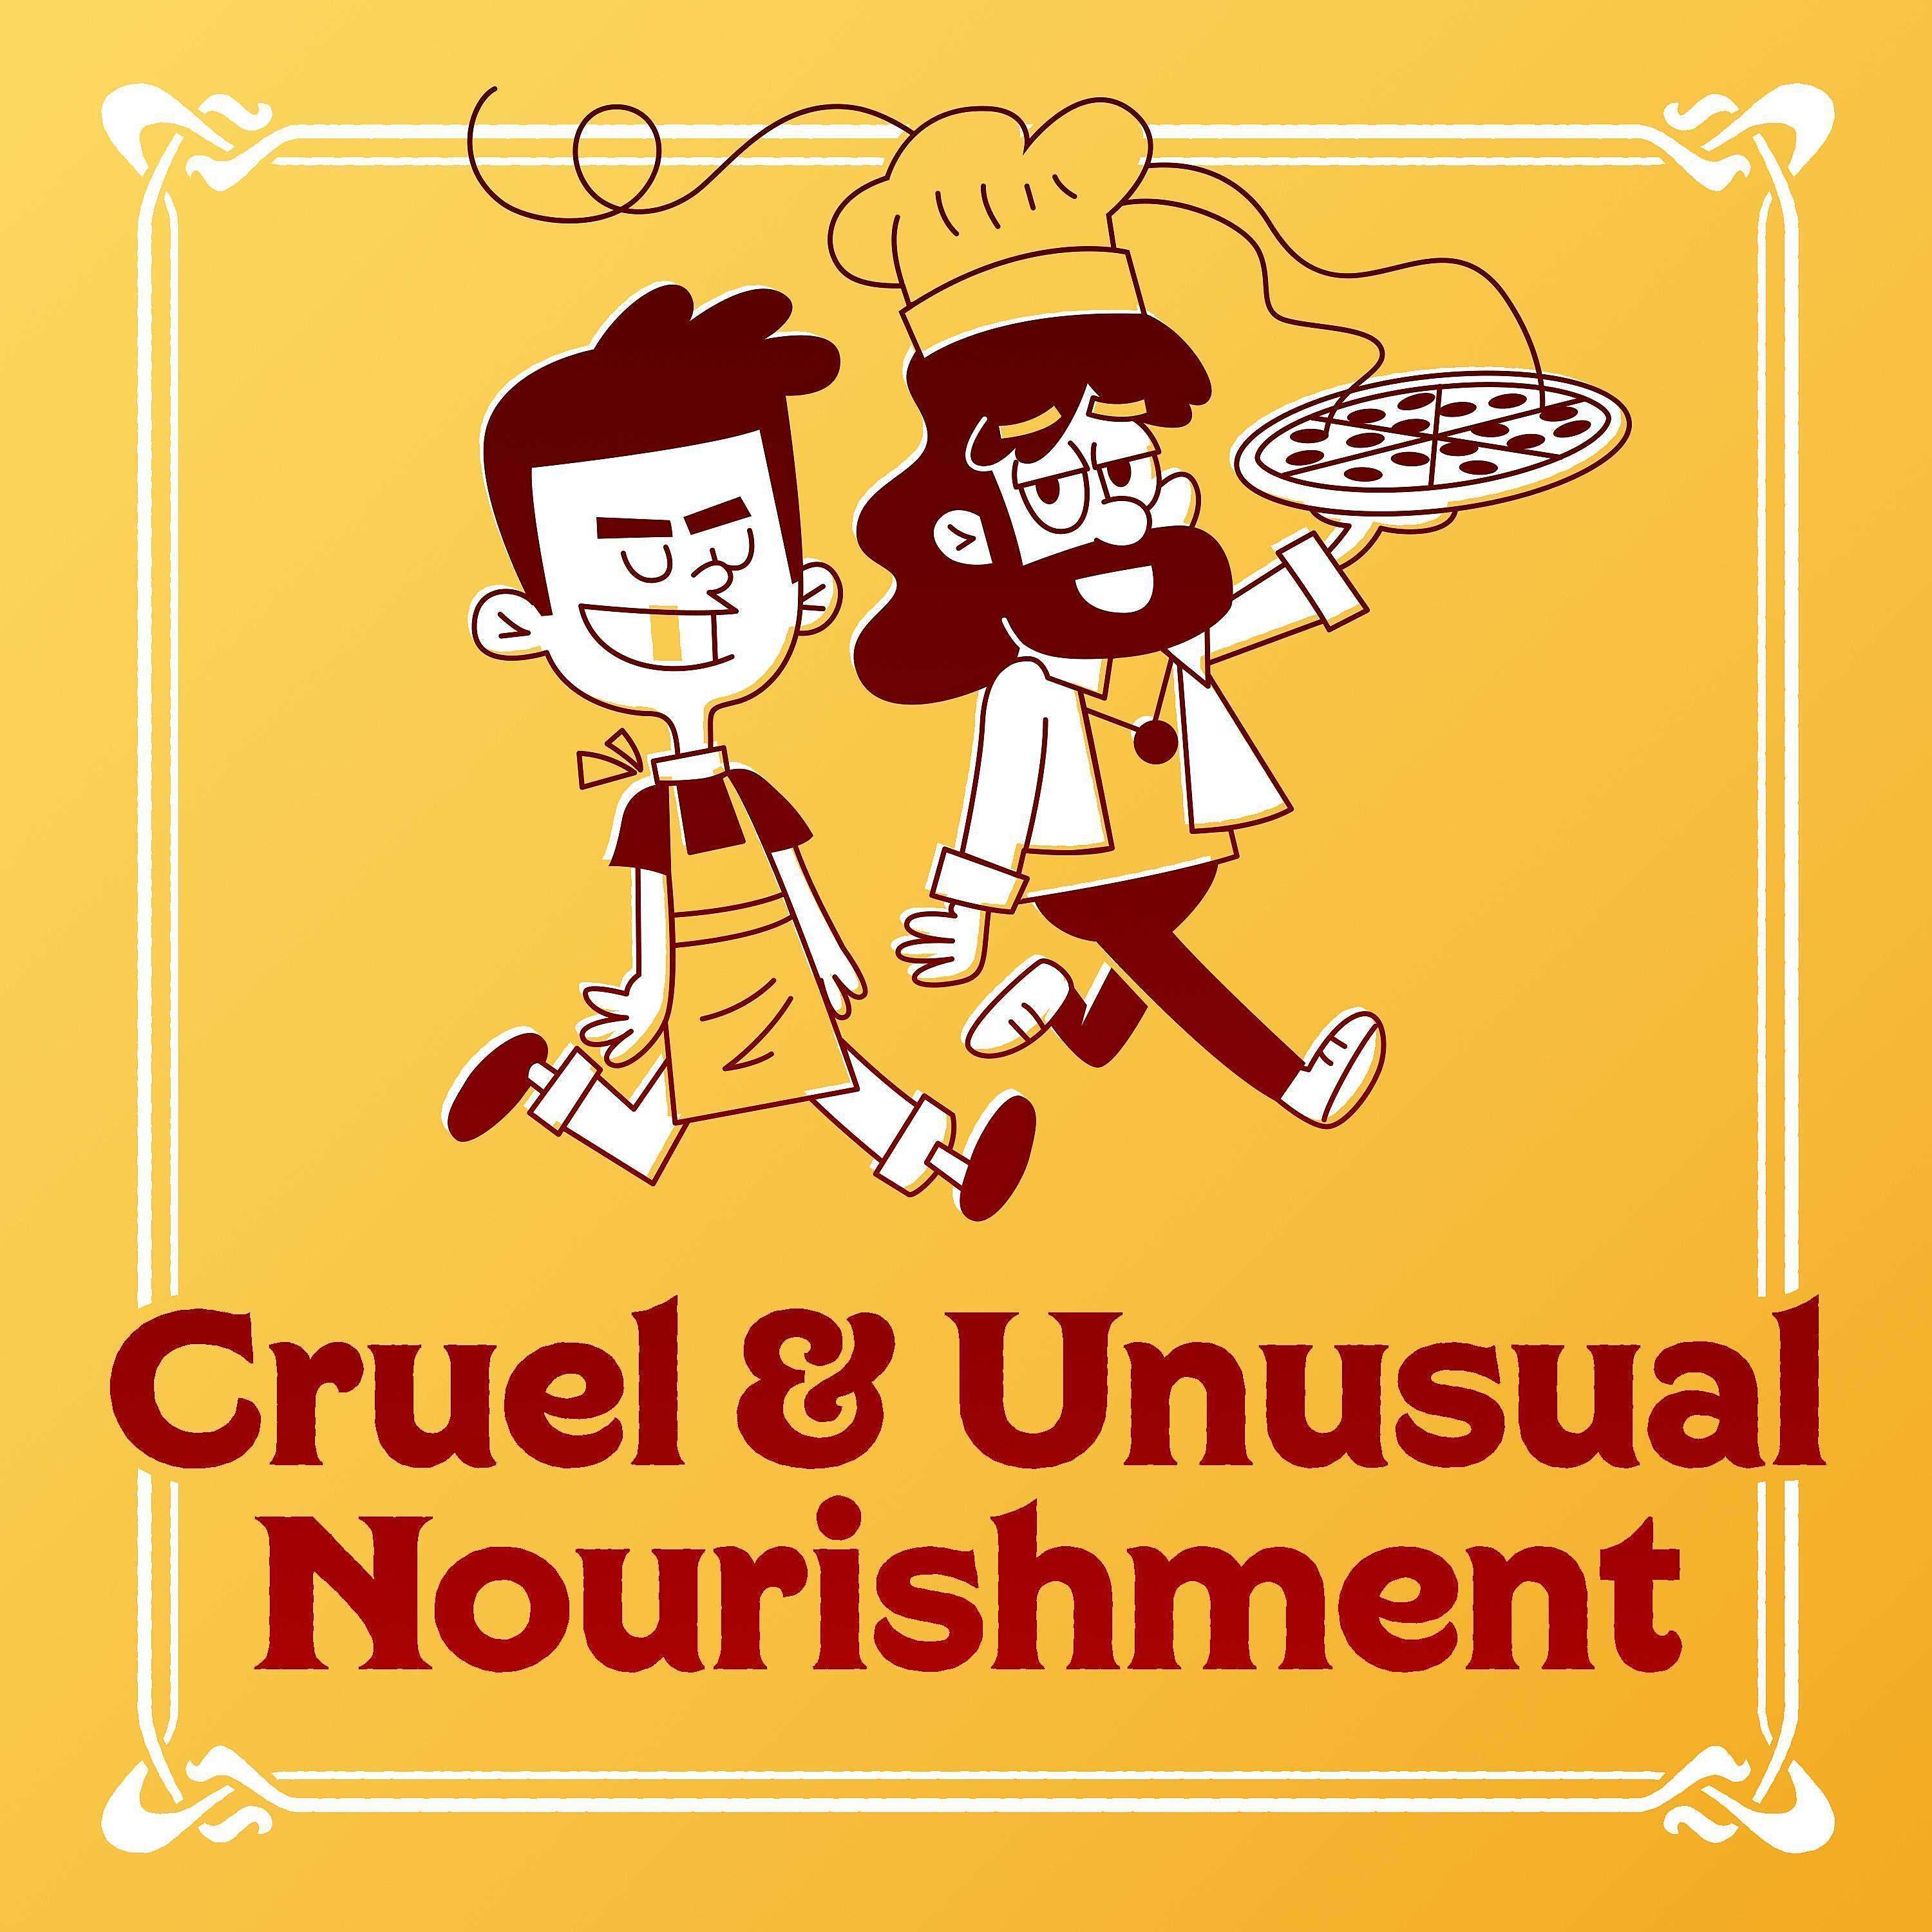 Cruel and Unusual Nourishment